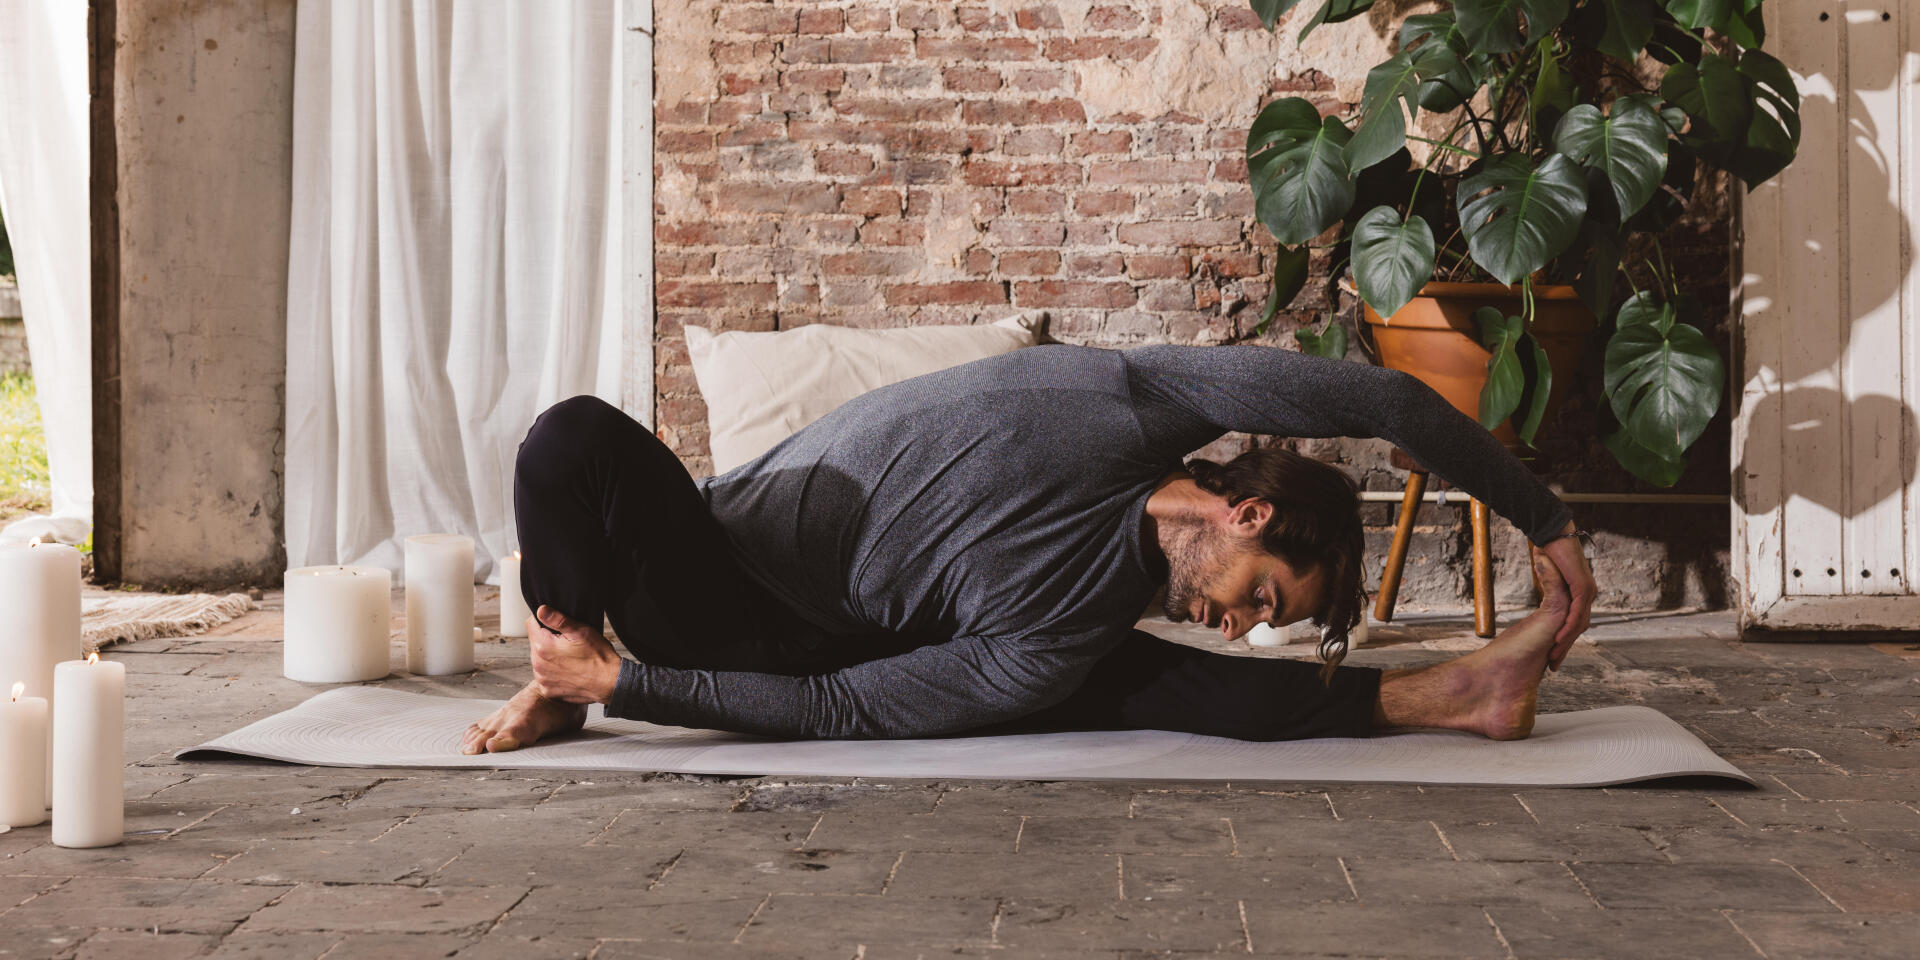 Quels sont les bienfaits du yoga pour la santé mentale ?